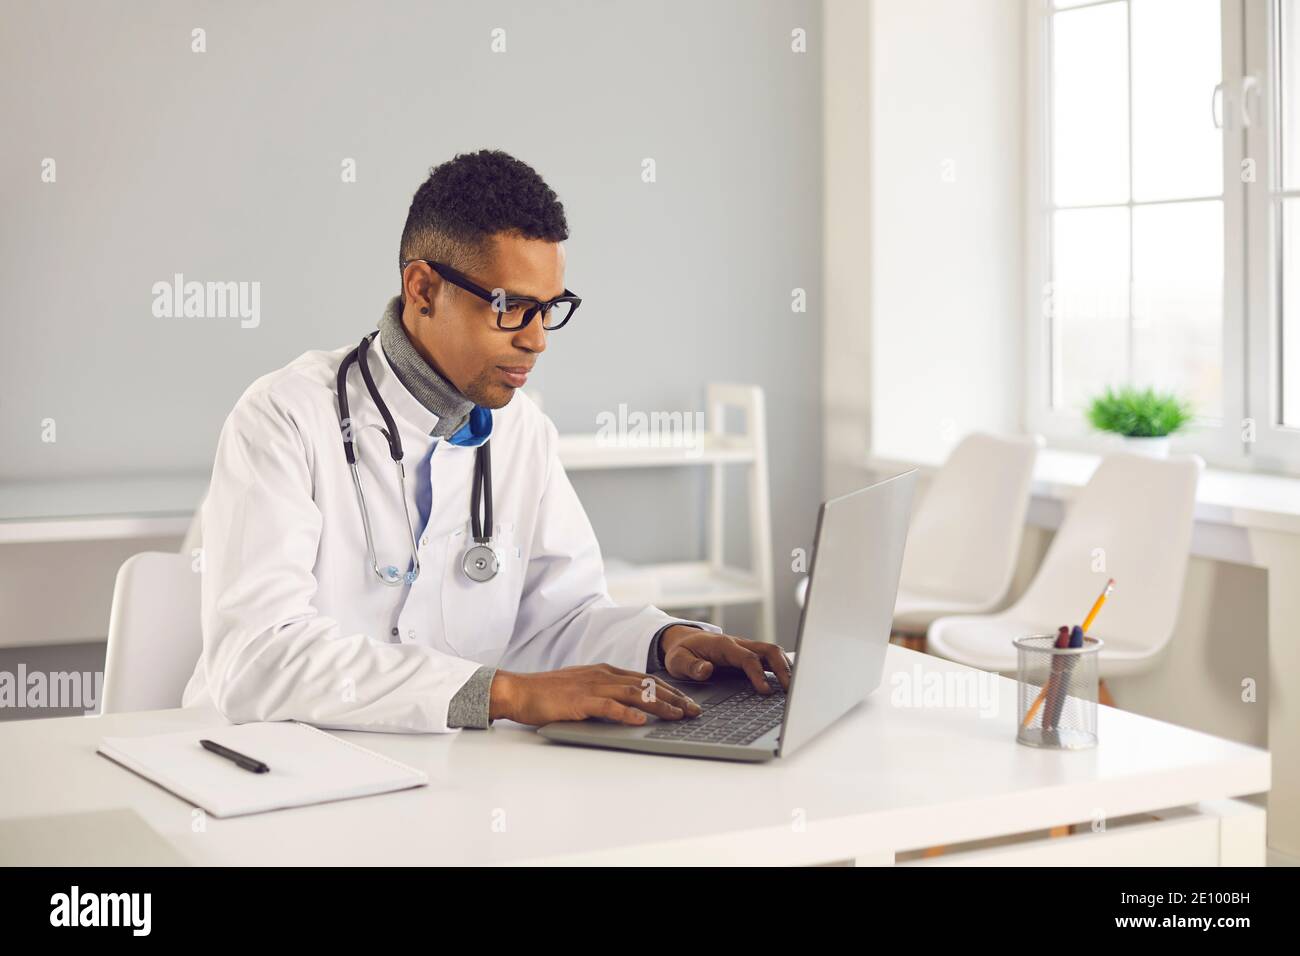 Arzt mit Laptop Online-Beratung zu geben oder zu füllen In elektronischen Gesundheitsakten Stockfoto